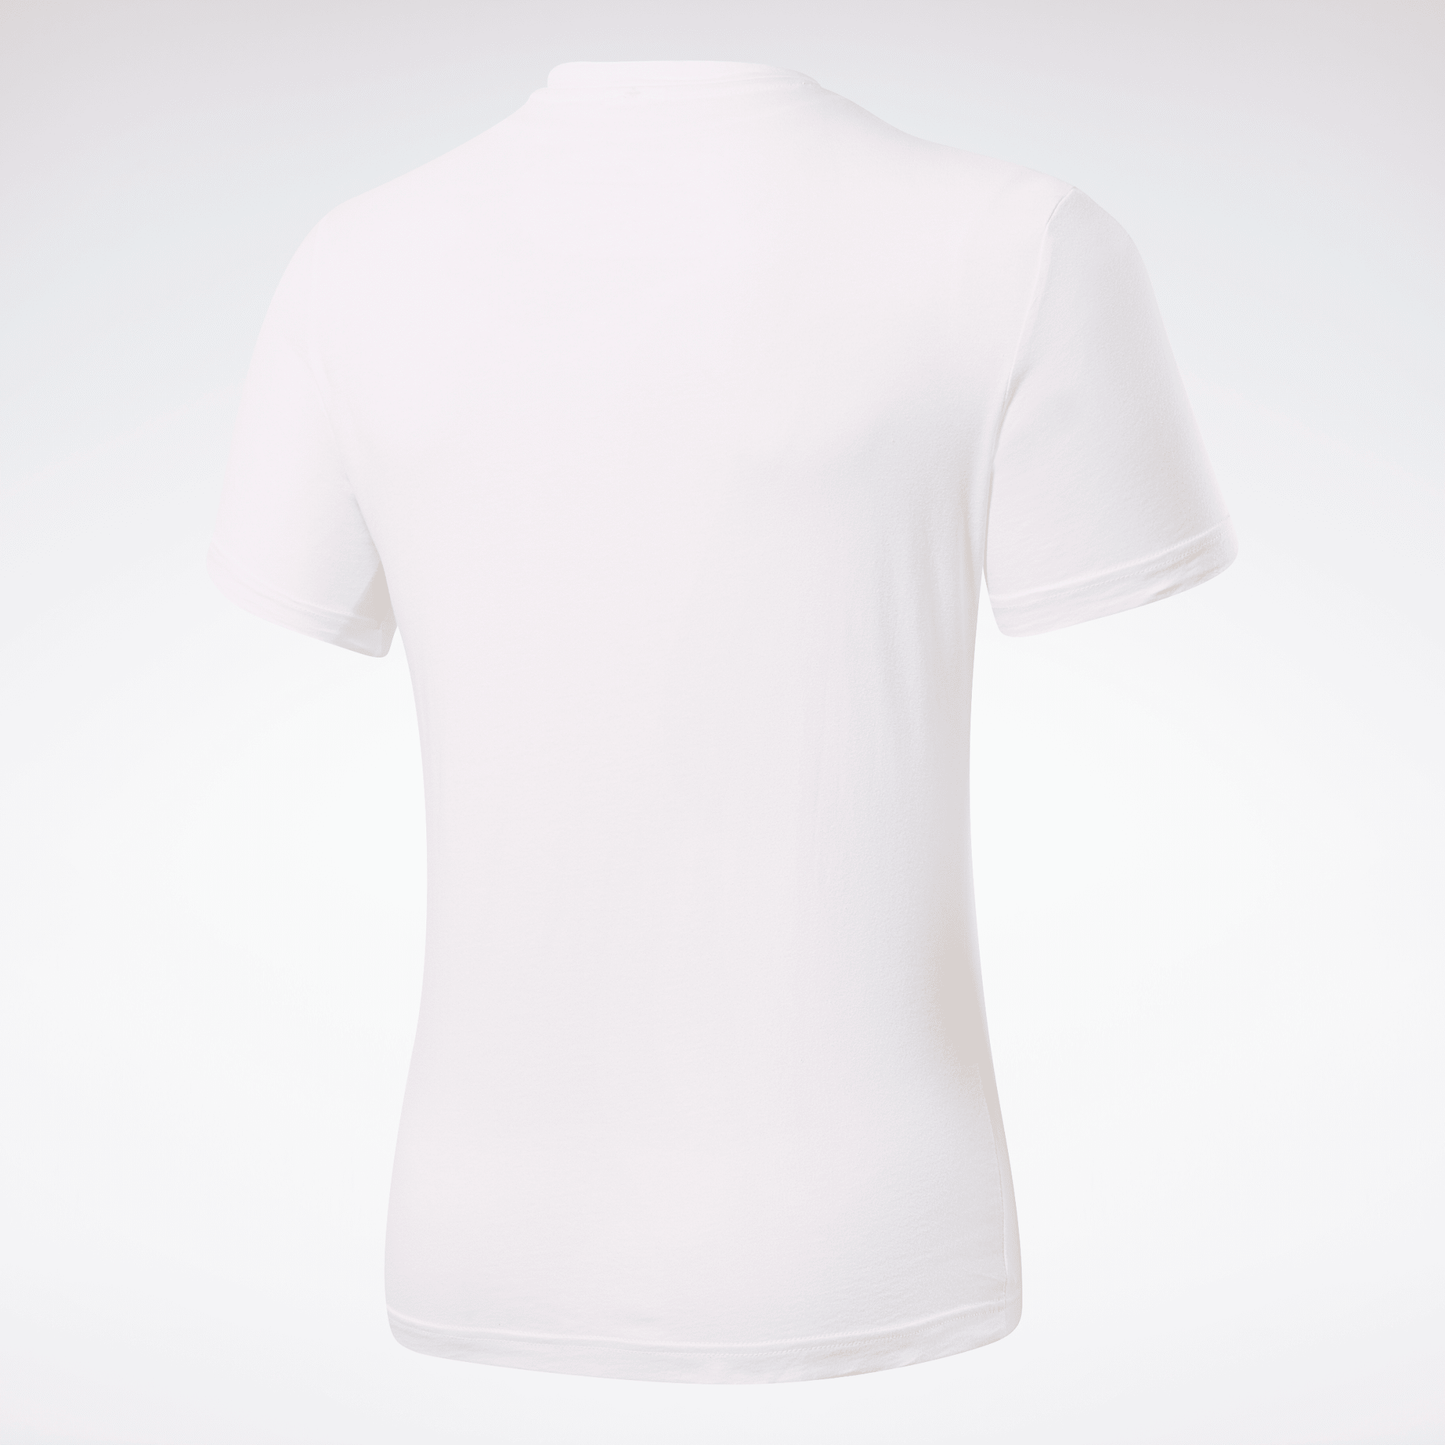 T-shirt Reebok Stacked - Blanc/Noir